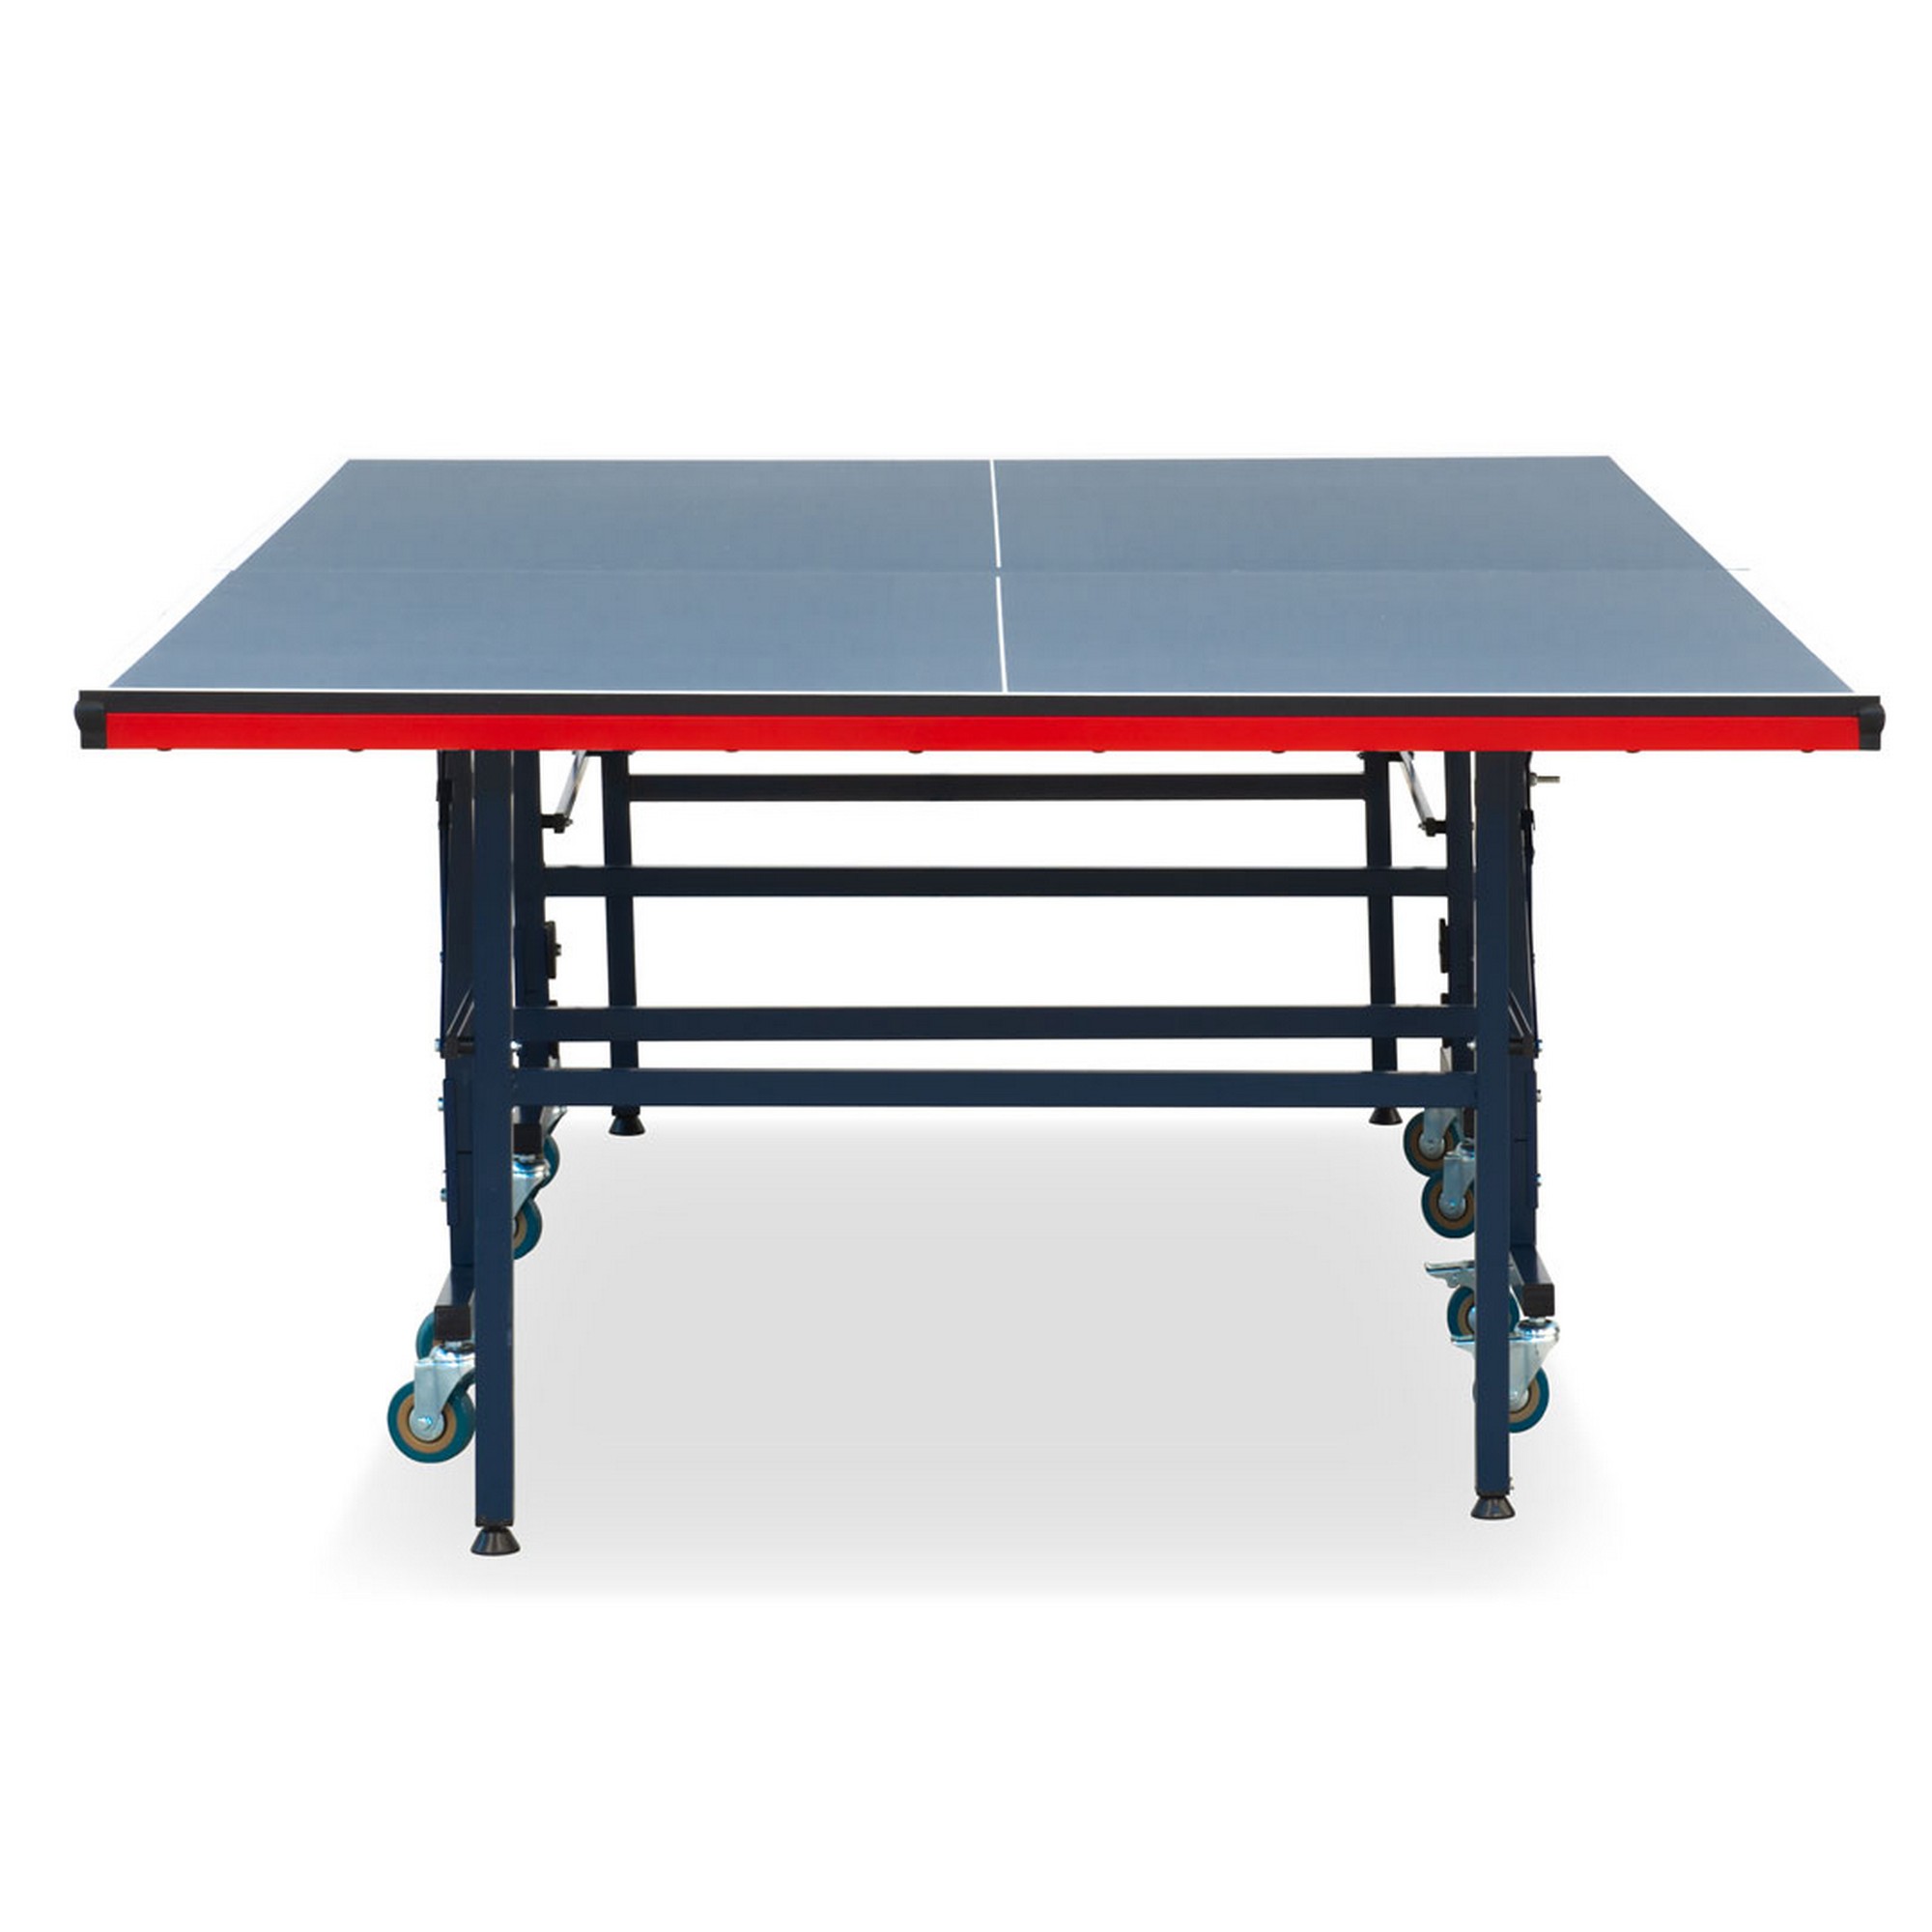 Теннисный стол складной для помещений S-280 Winner 51.280.02.0 2000_2000